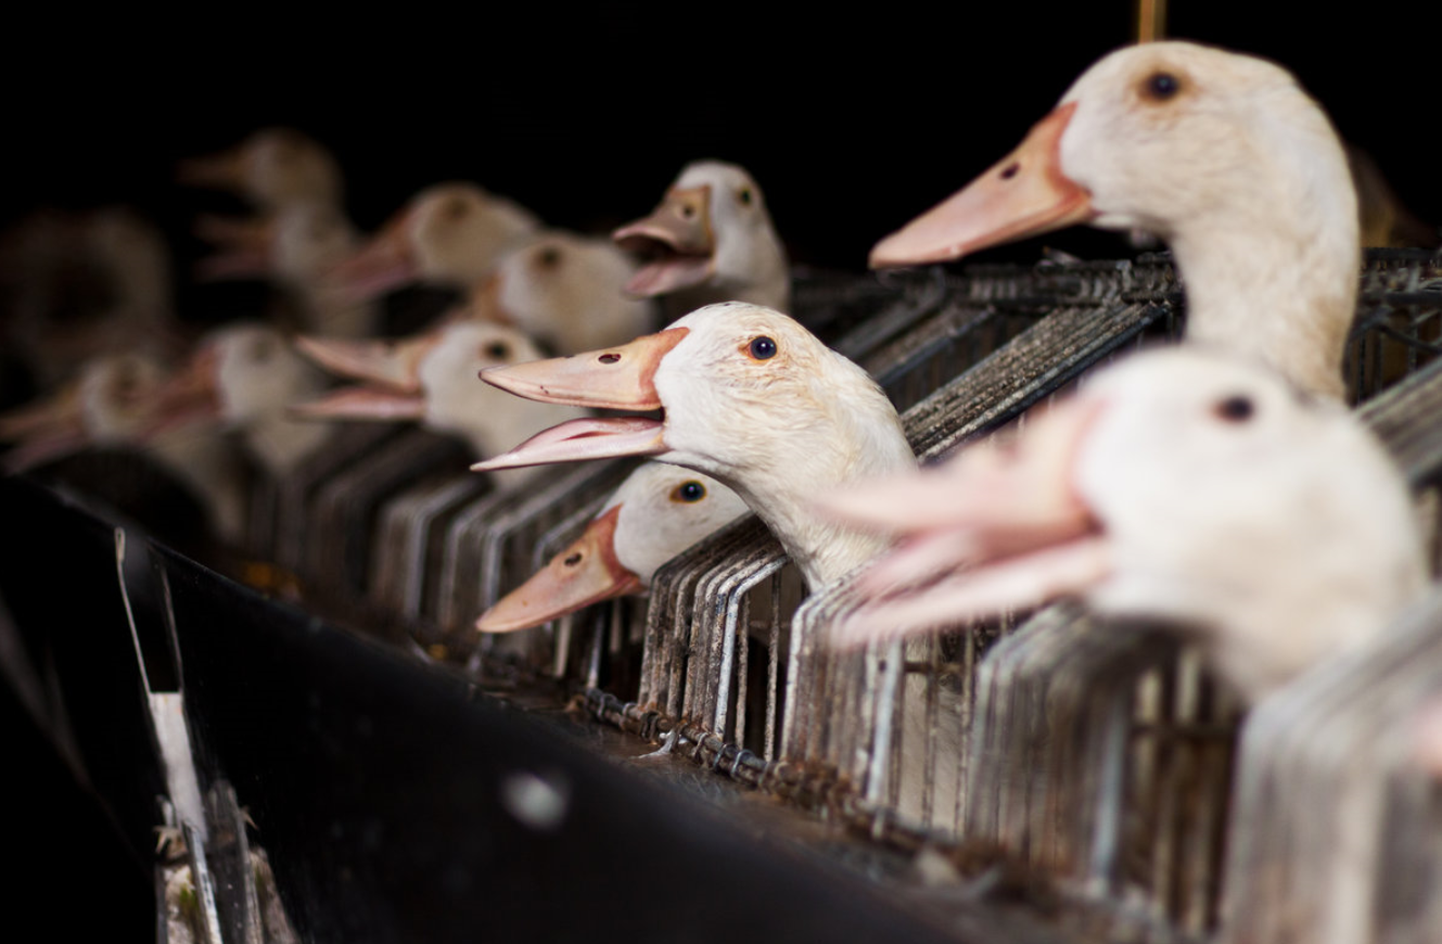 Loomakaitseorganisatsioon Nähtamatud Loomad alustas kampaaniat, mis kutsub Eesti restorane ja jaekette loobuma delikatessina tuntud rasvase pardi- ja hanemaksapasteedi ehk foie gras' müügist.